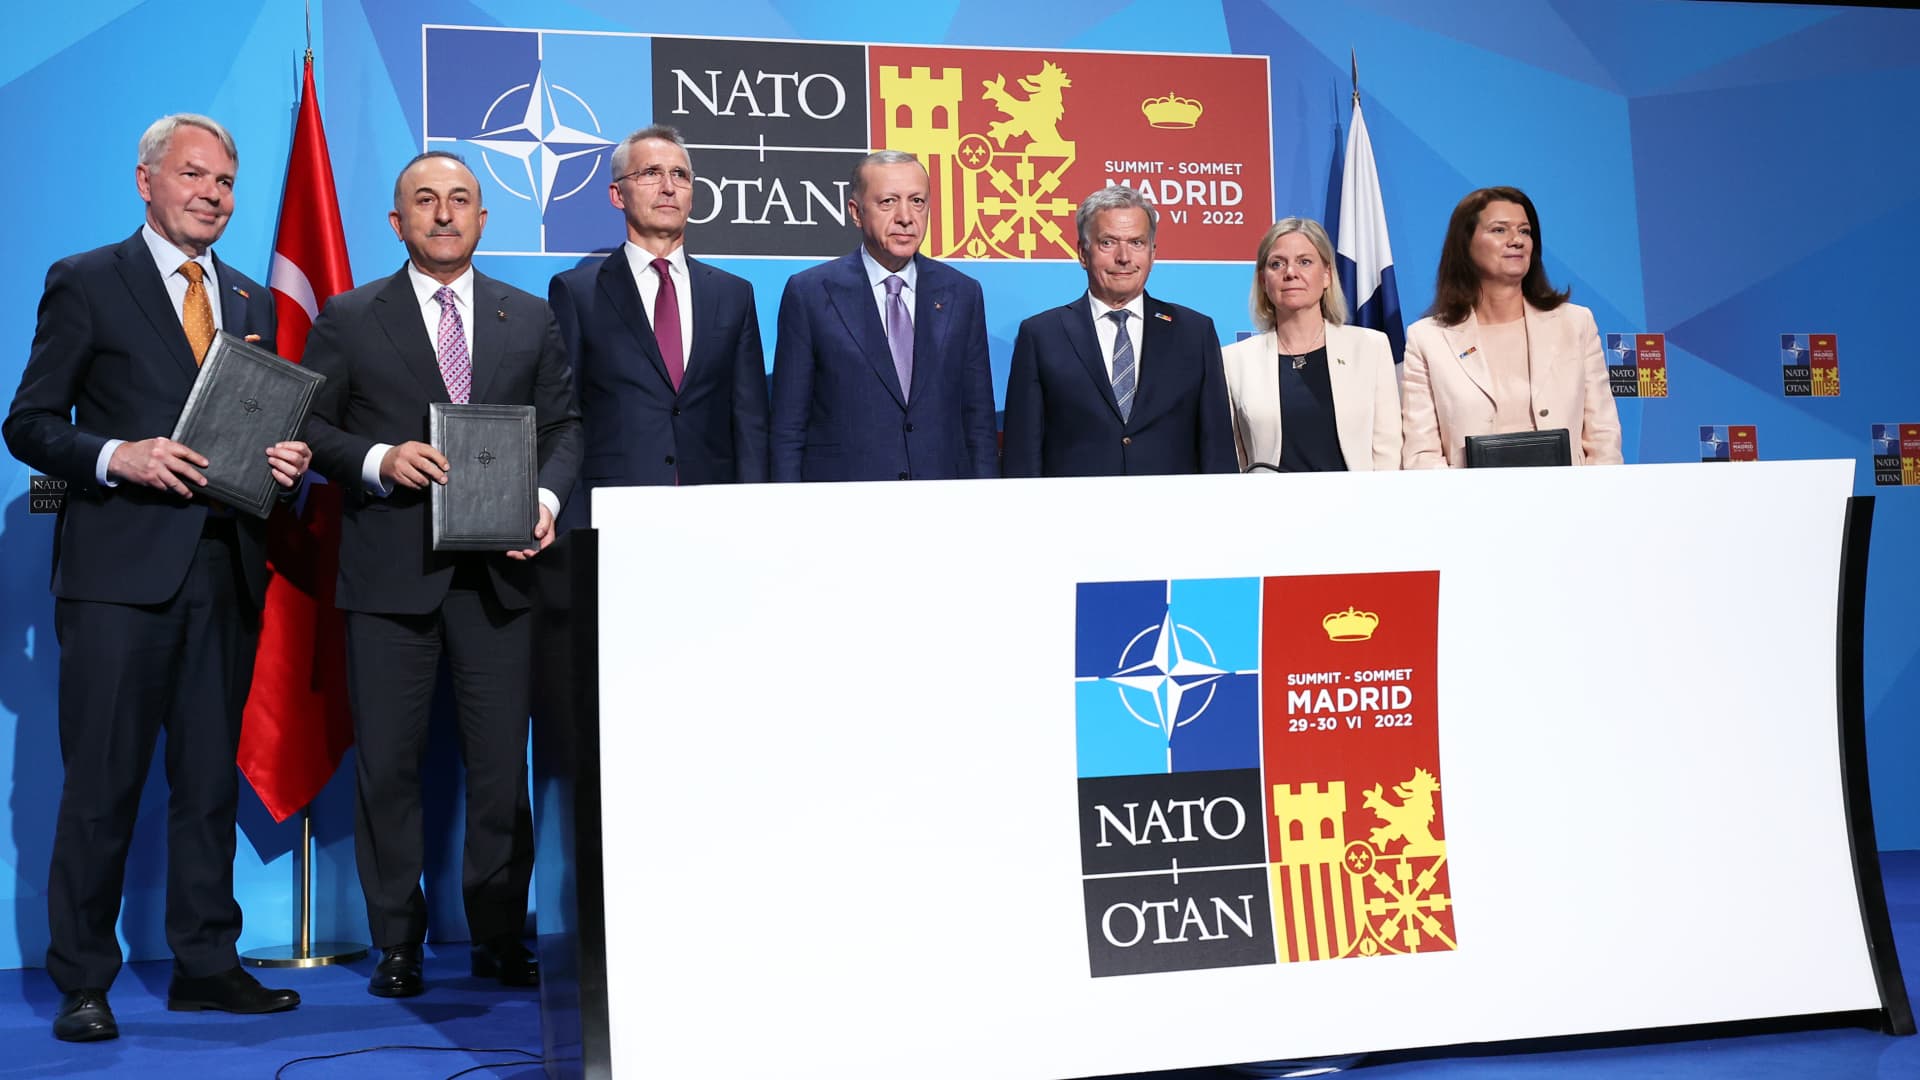 İsveç ve Finlandiya NATO'ya katılmak için bir adım daha attılar, bu da artık katılım anlaşmasının resmi olarak onaylanmasından başka bir şey kalmadığı anlamına geliyor.